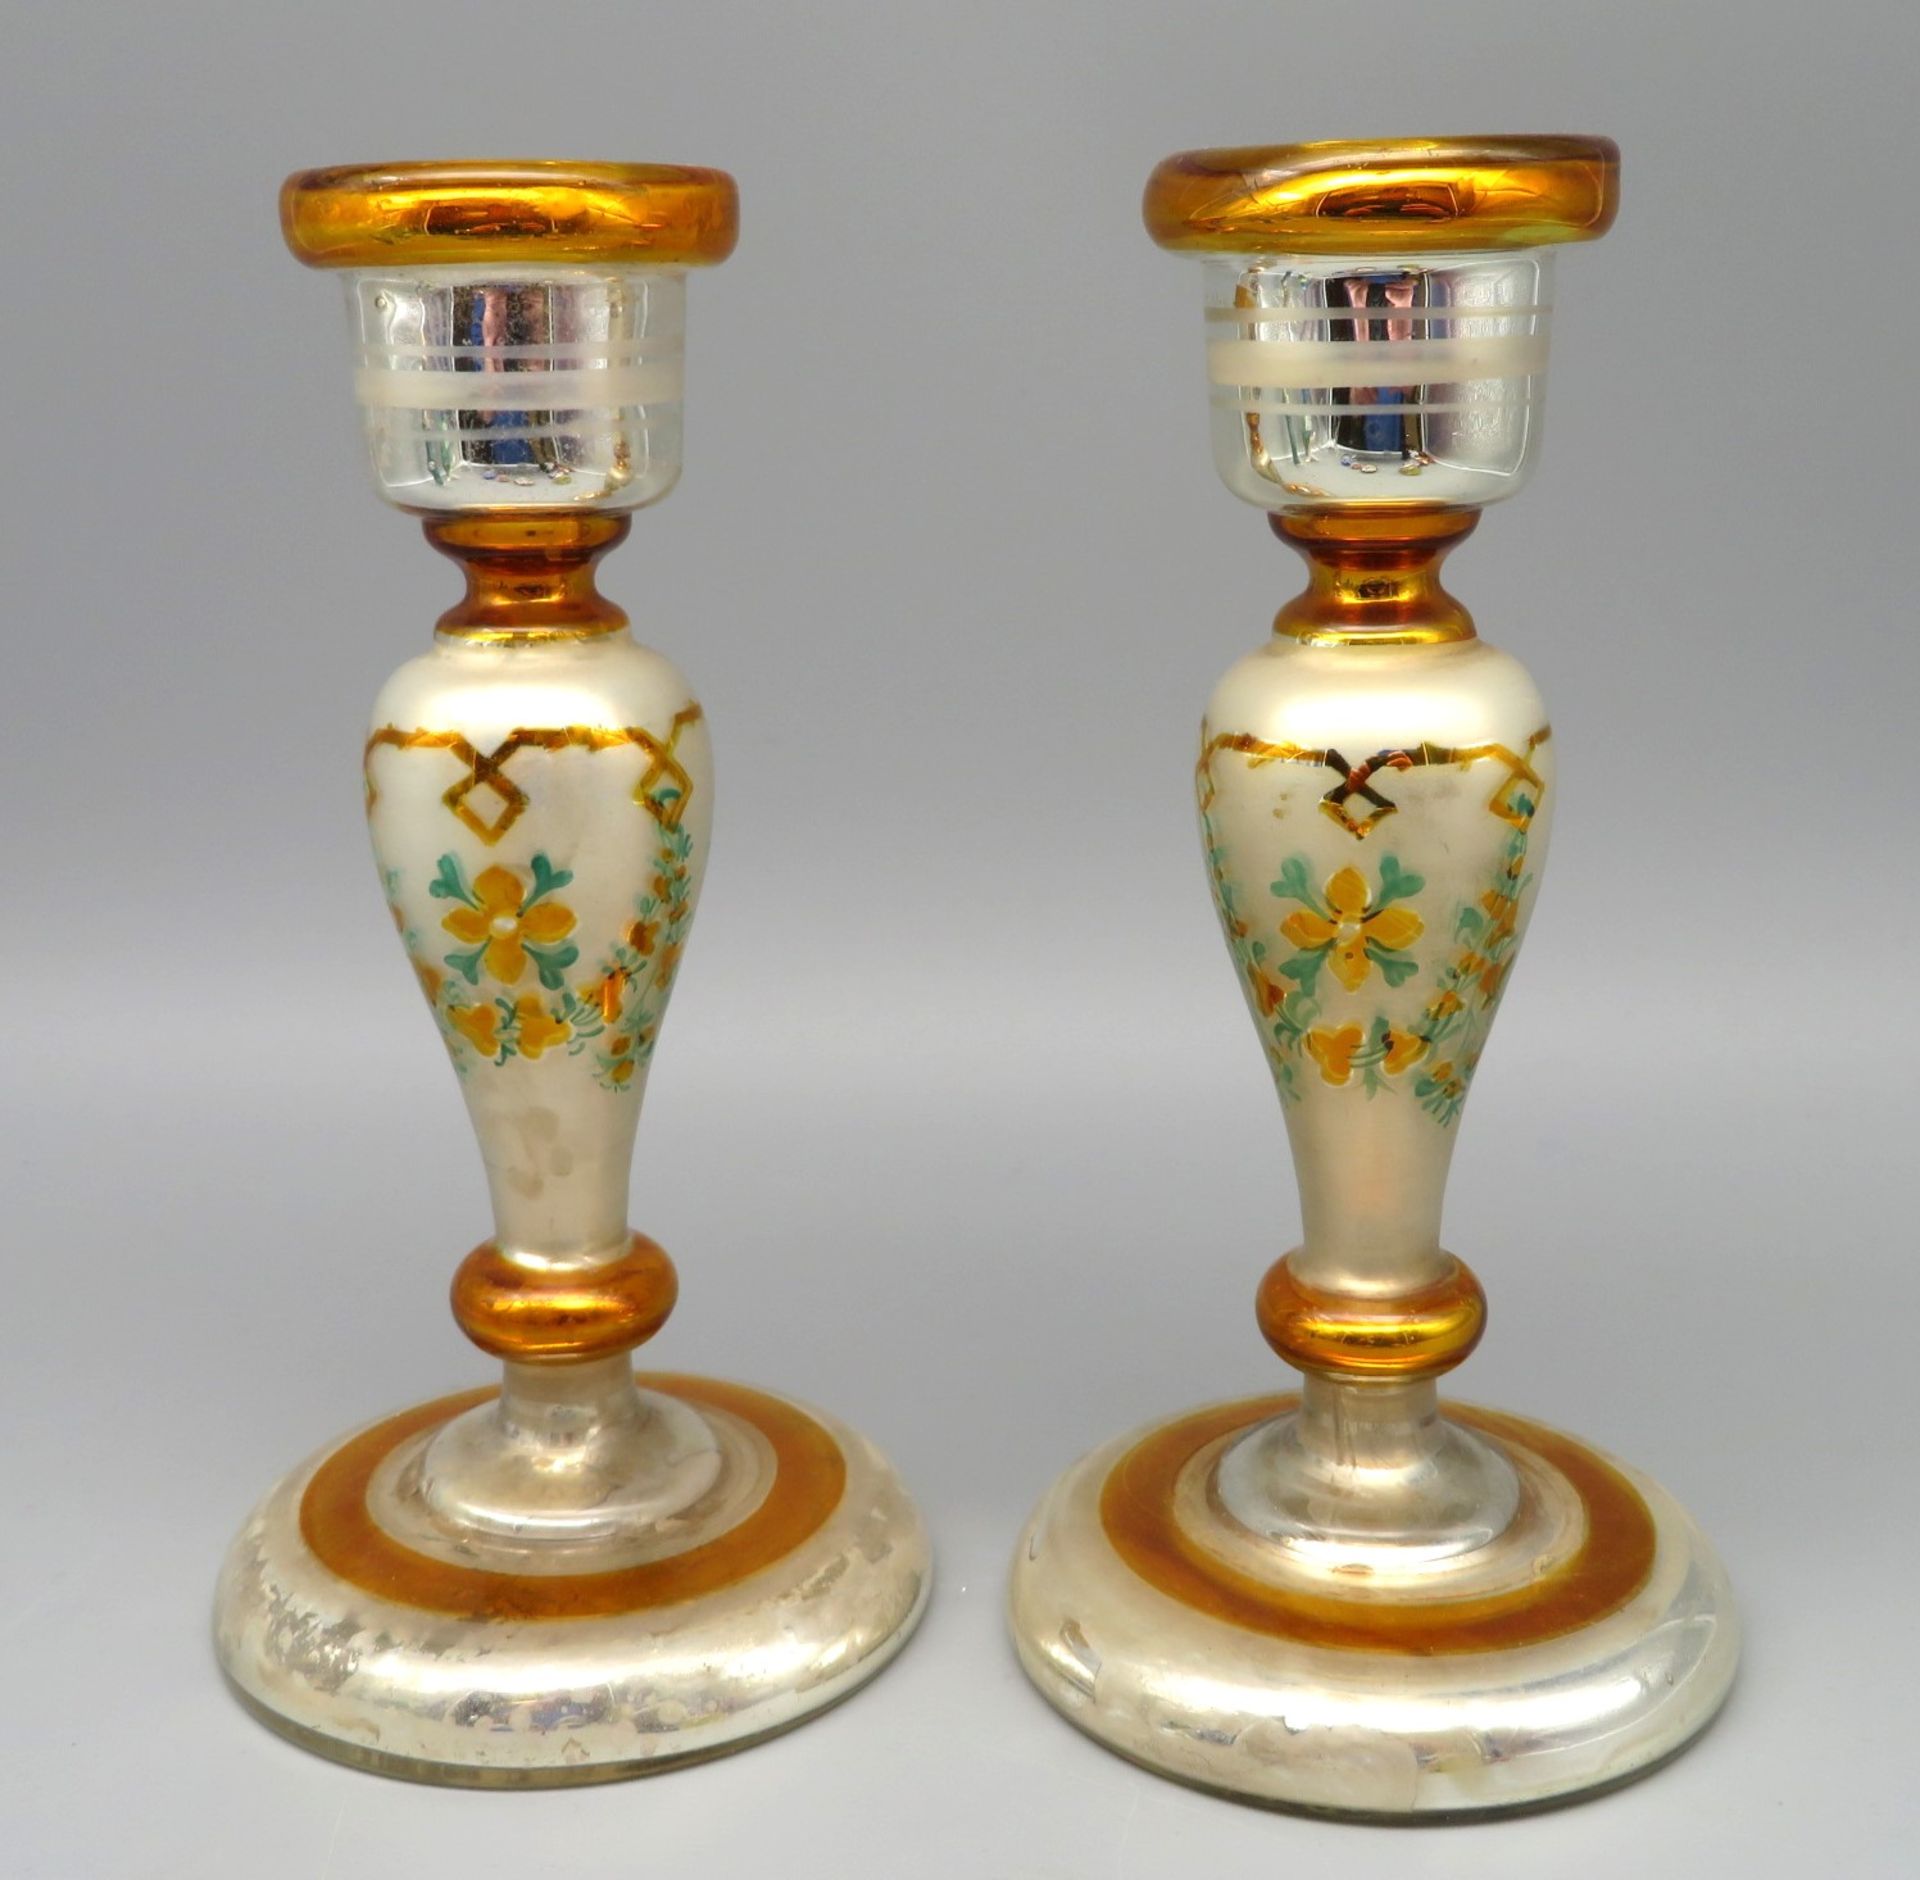 2 bäuerliche Kerzenleuchter, Biedermeier, um 1830/40, Bauernsilber mit feiner polychromer Bemalung,